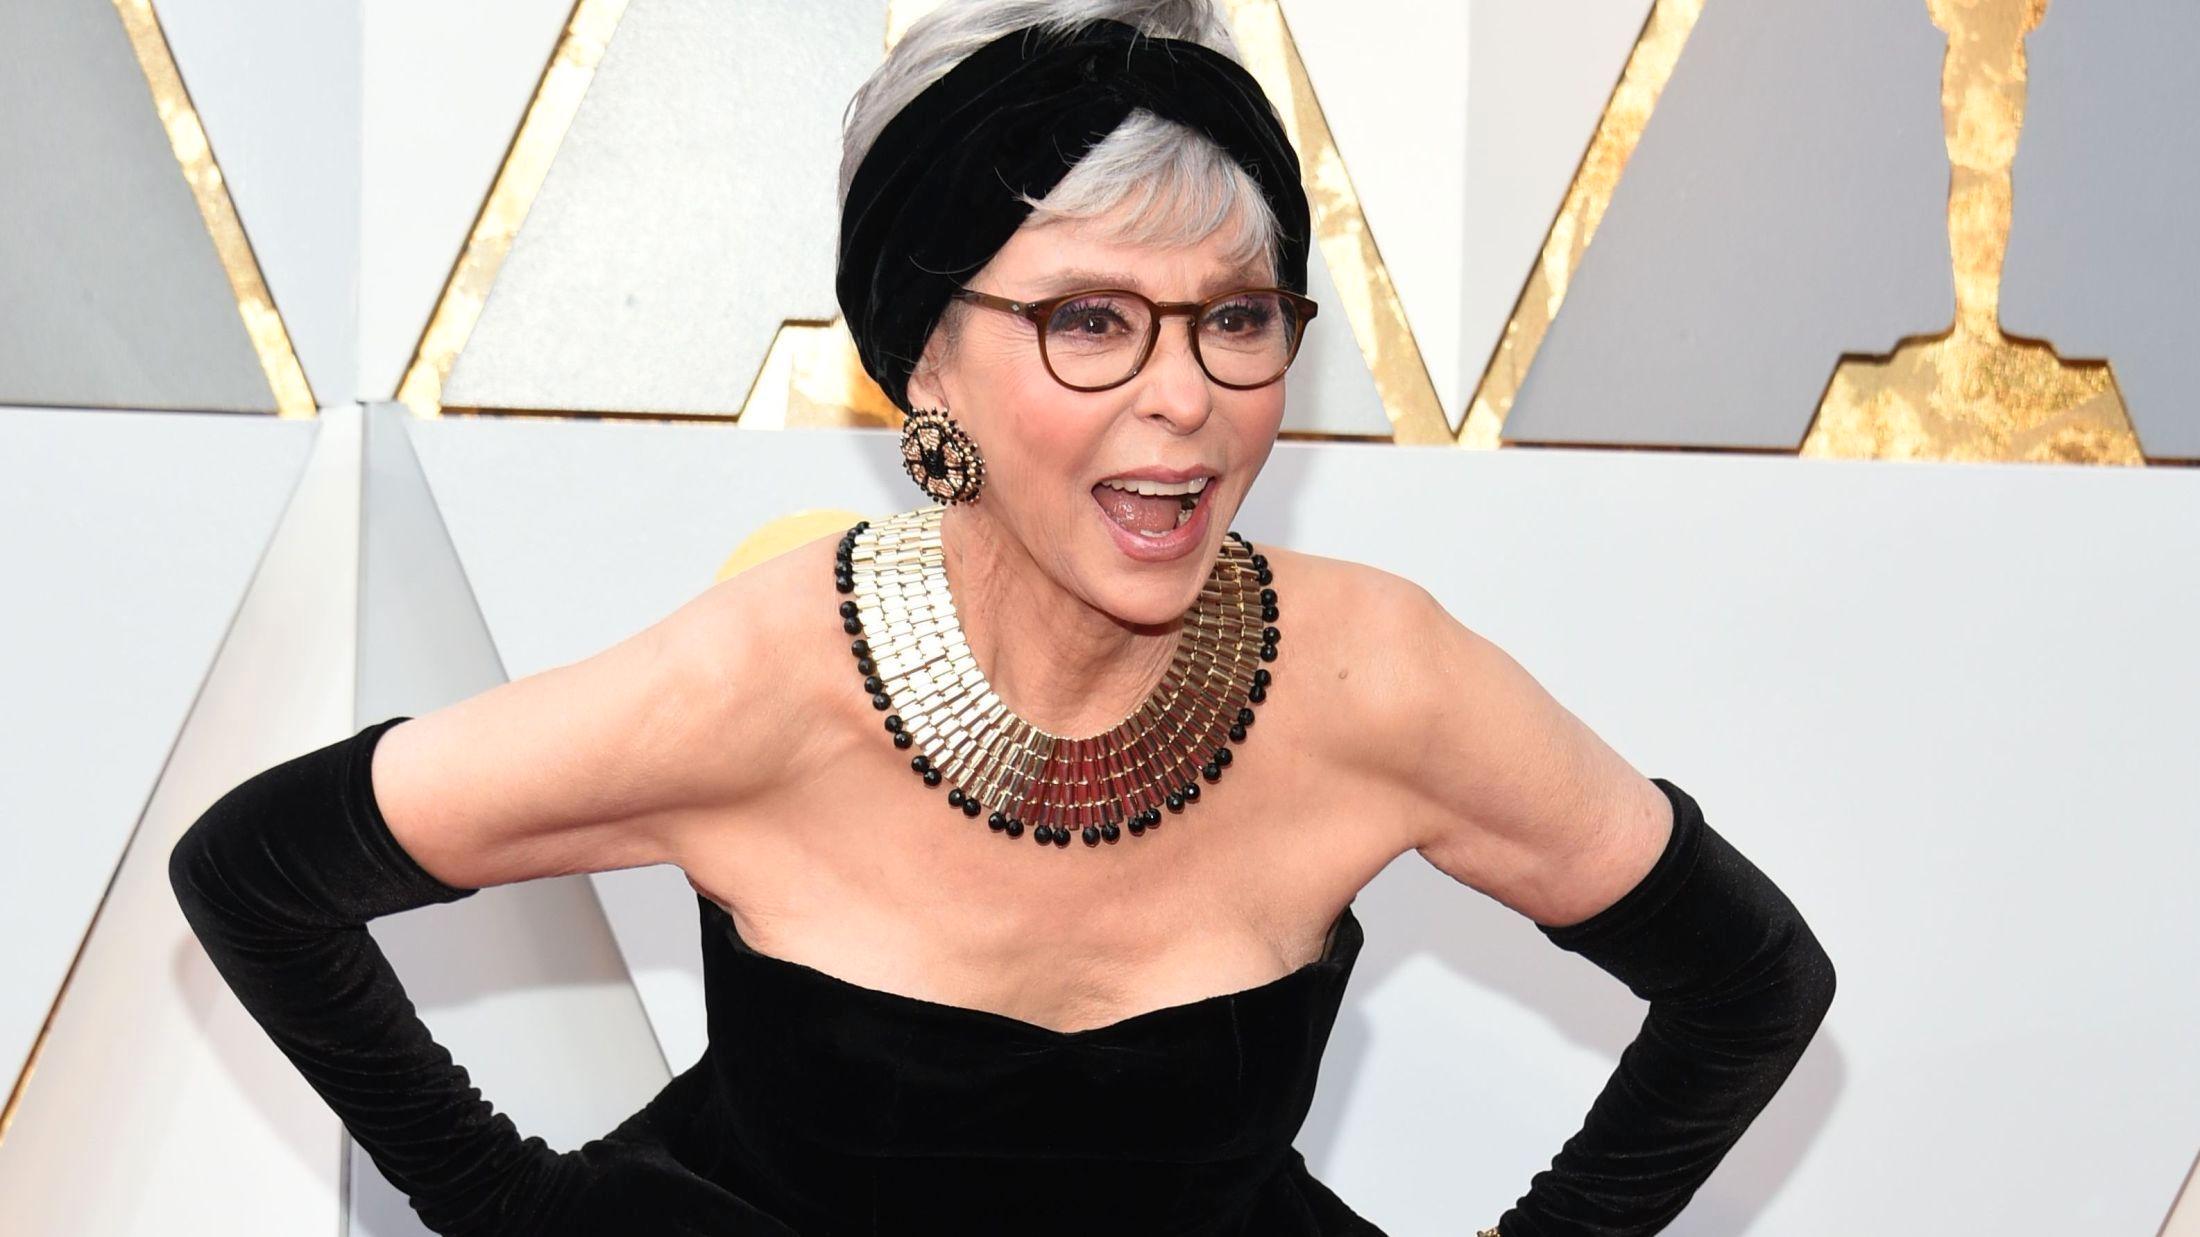 GIKK FOR GJENBRUK: Rita Moreno brukte samme kjole som hun brukte under Oscar-utdelingen i 1962 under nattens prisutdeling. Foto: AFP